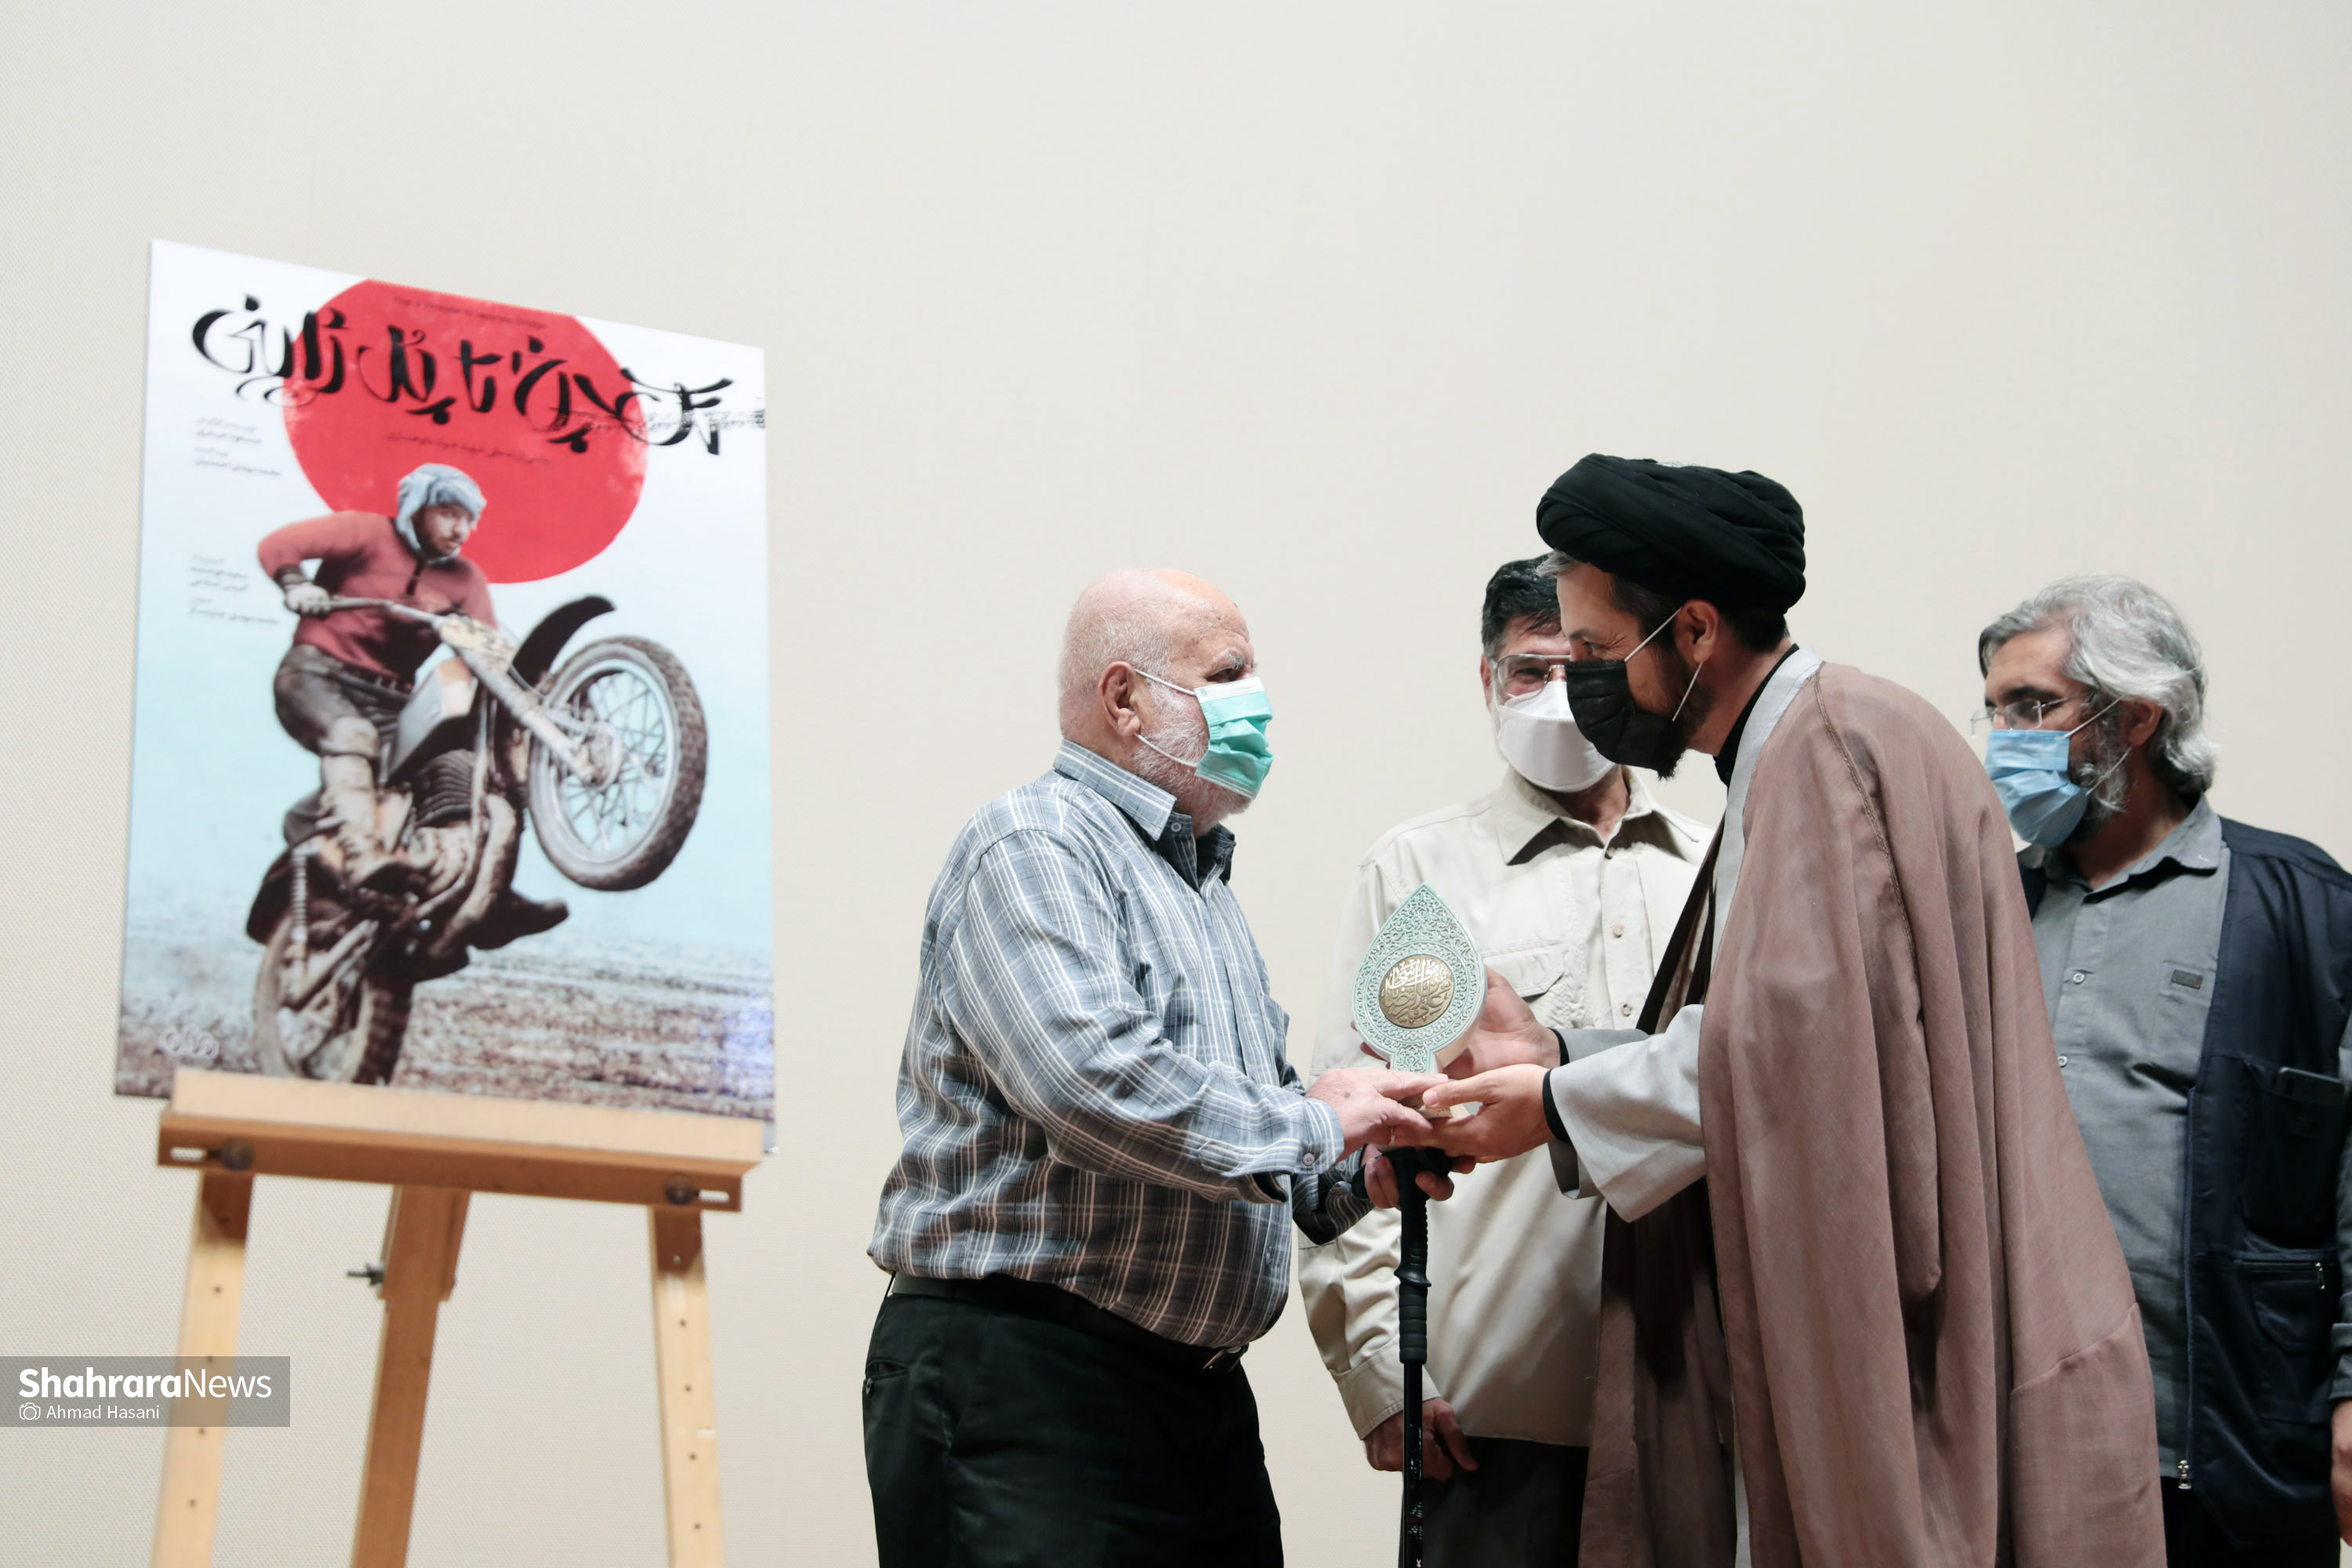 مستند «تک چرخ تا پل ژاپنی» در پردیس سینمایی هویزه رونمایی شد